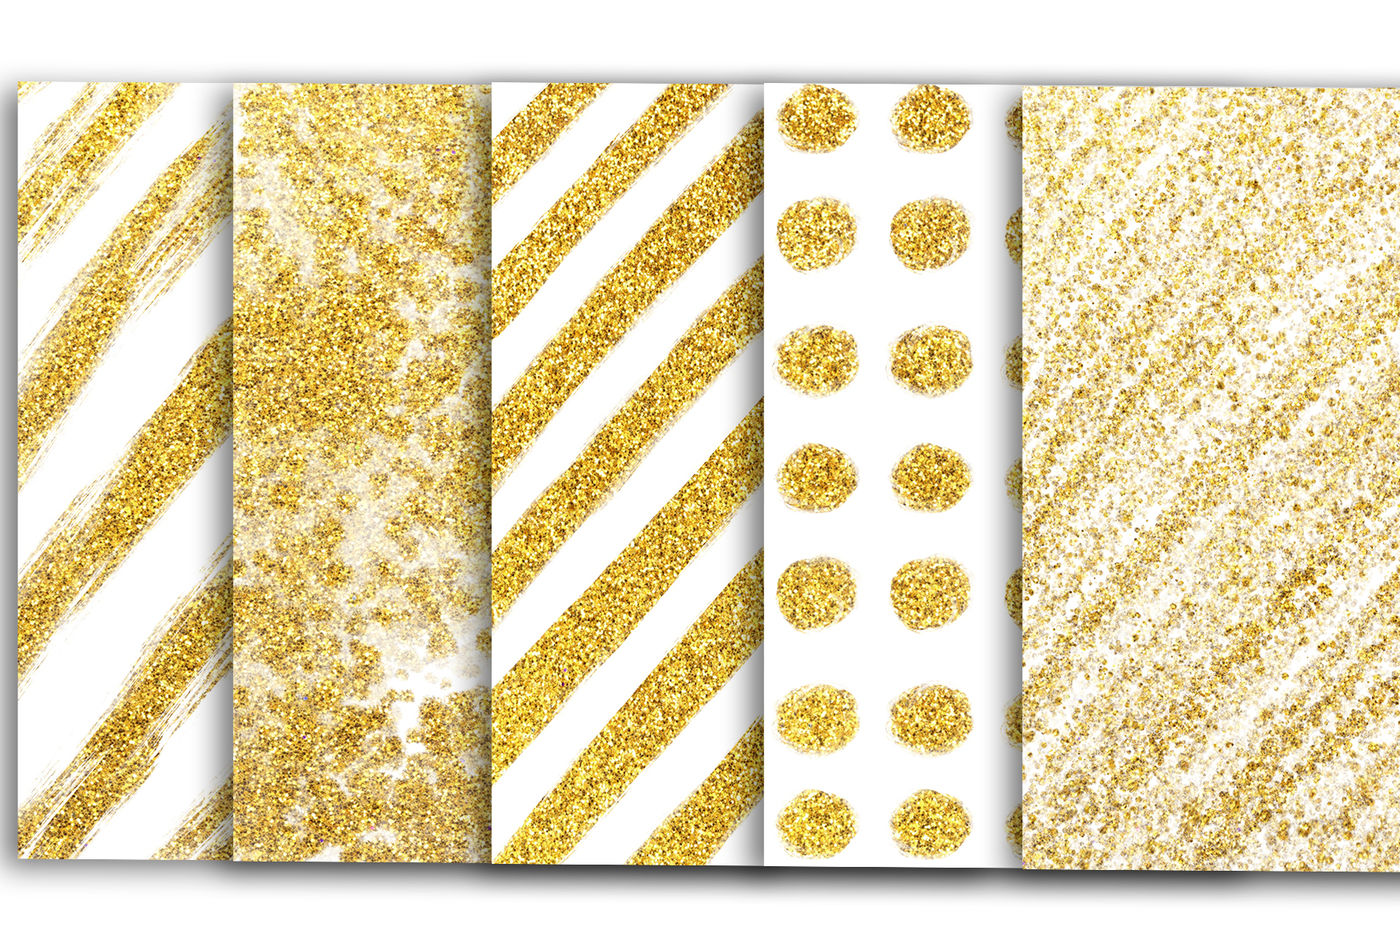 Gold Glitter Paper - Concord & 9th